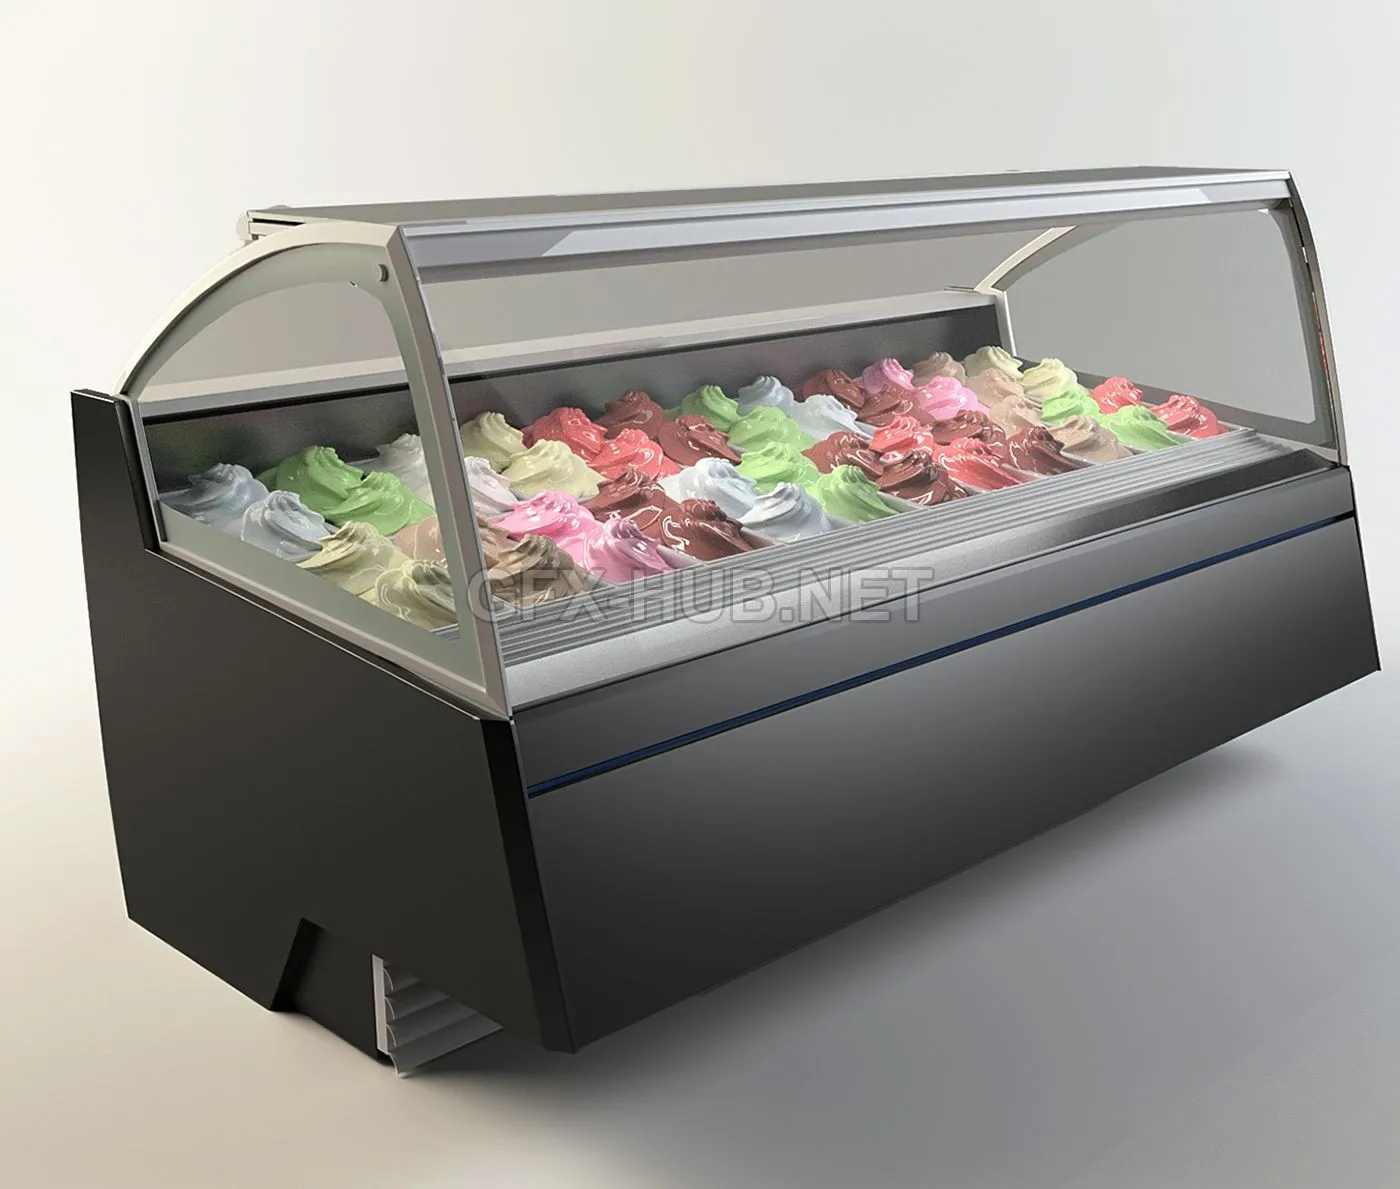 FURNITURE 3D MODELS – Gelostandard – Elite Freezer